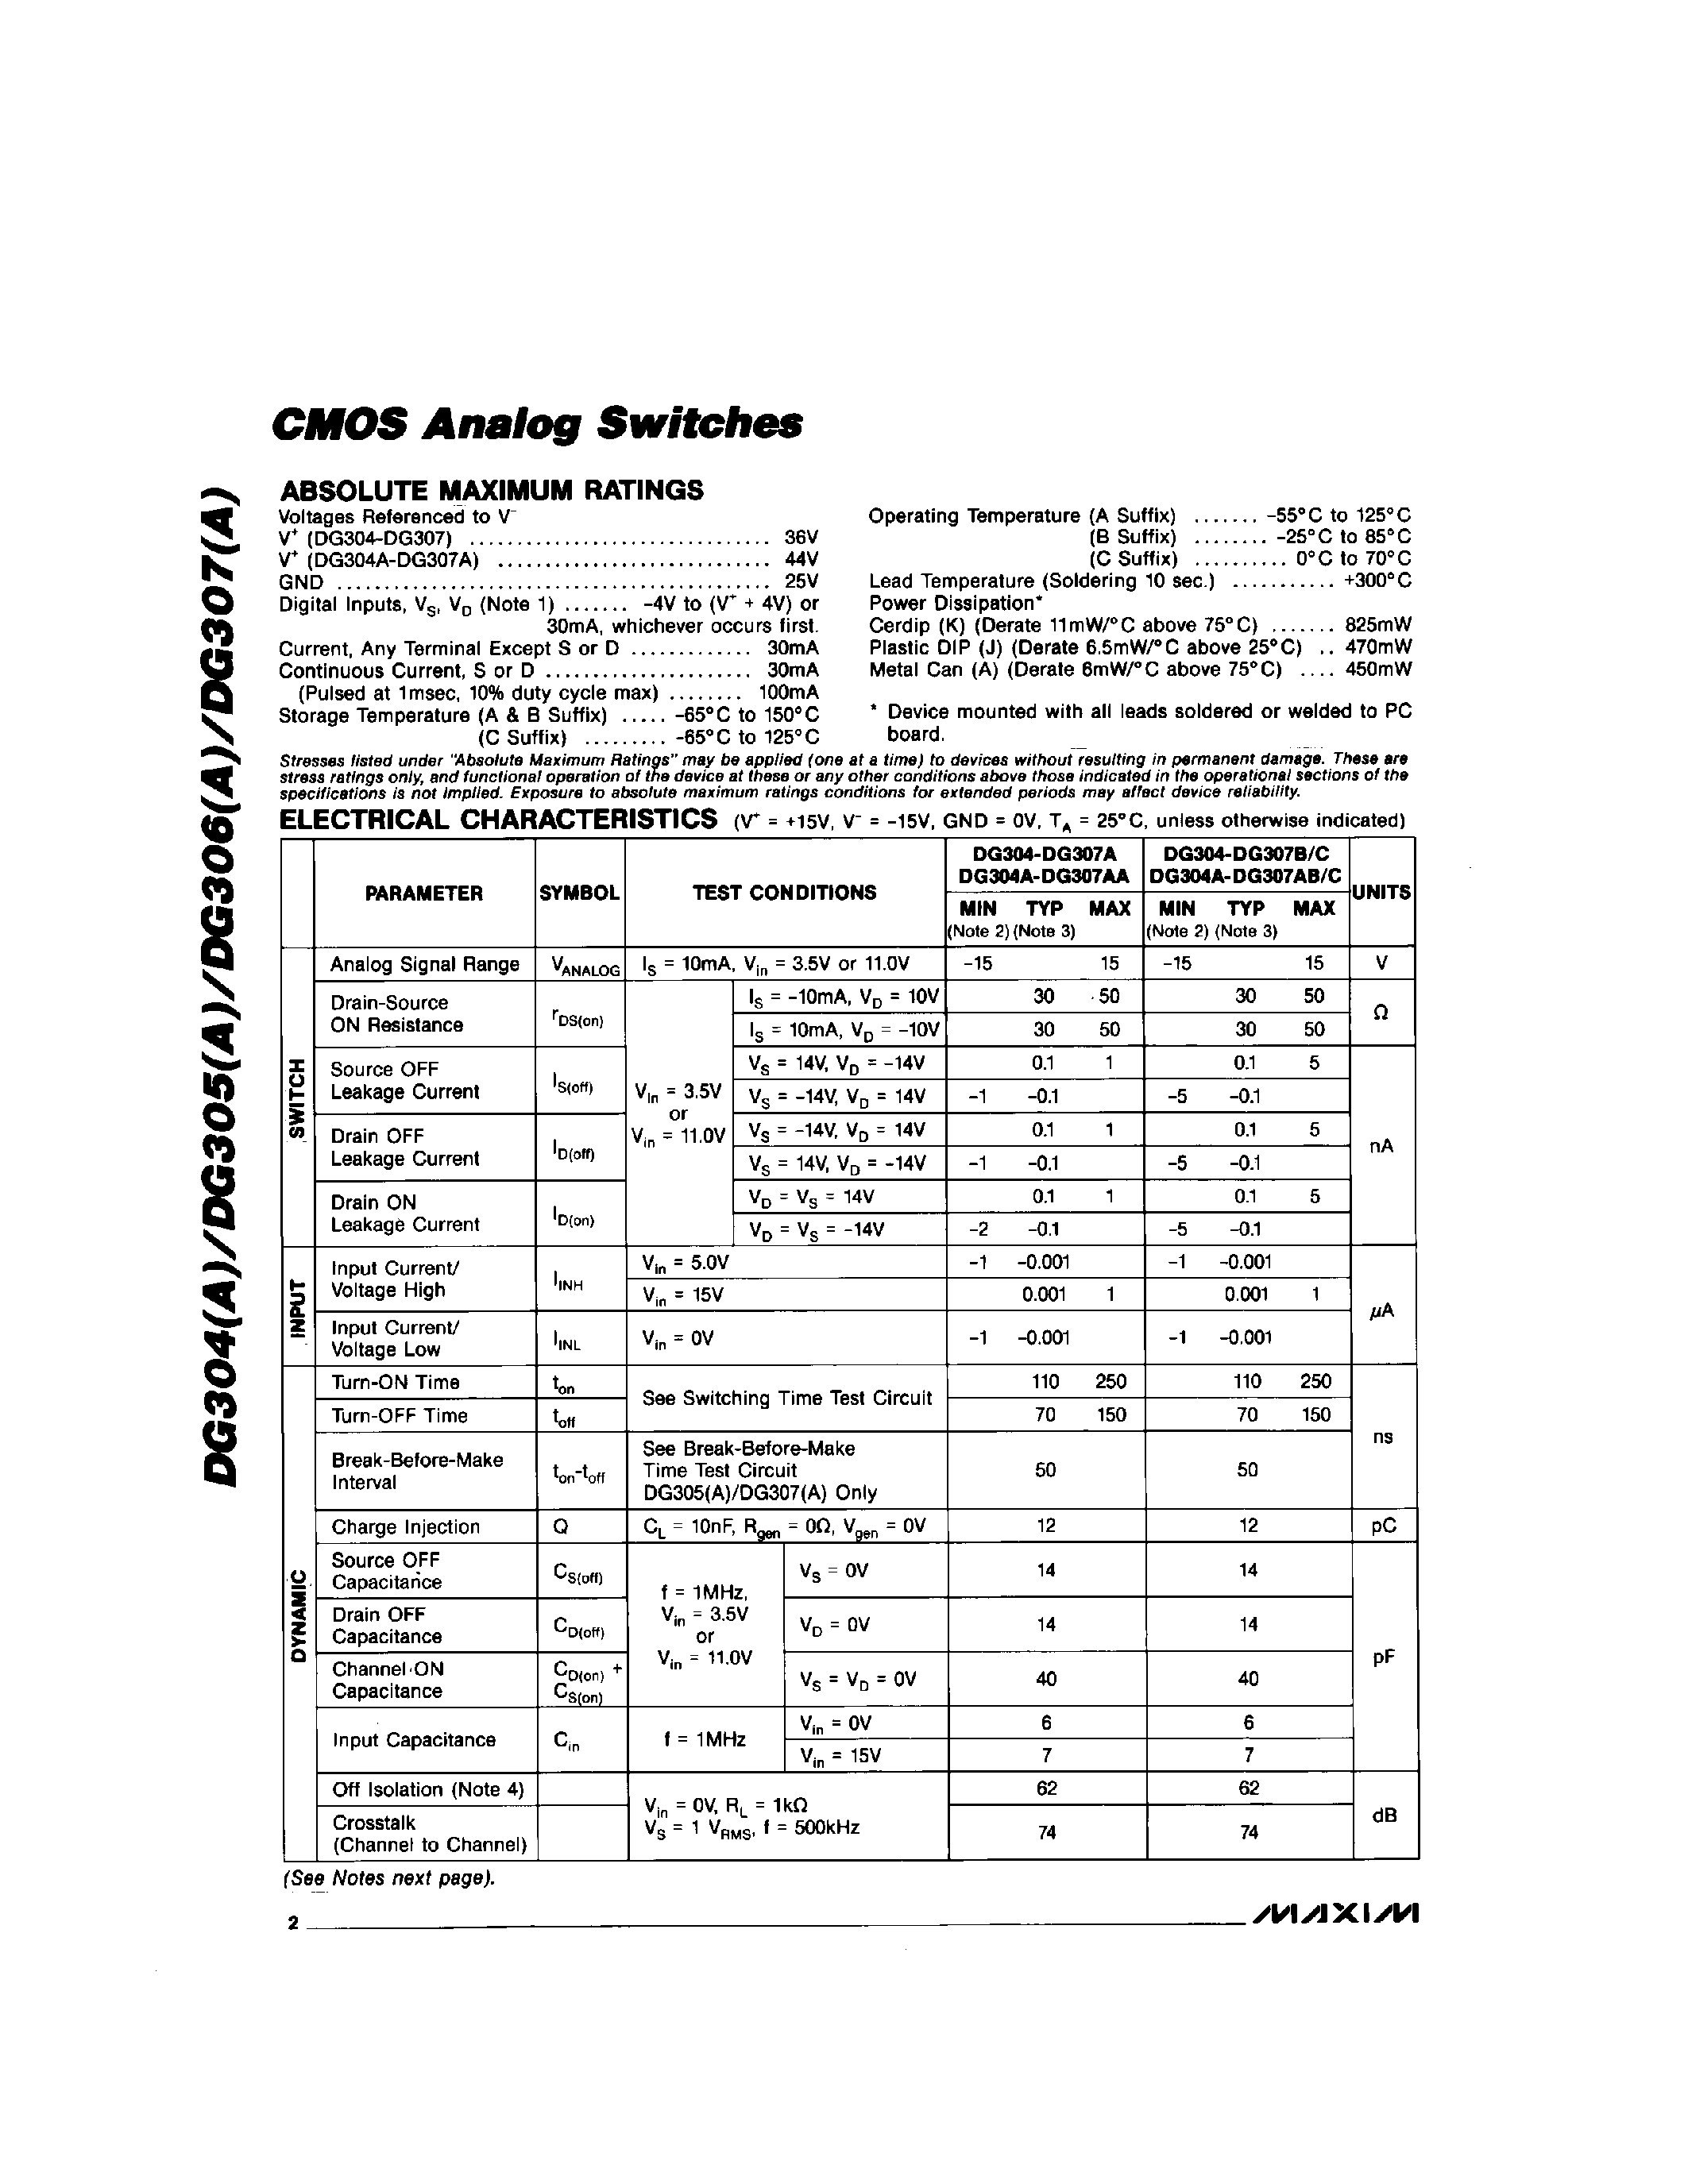 Datasheet DG305C/D - CMOS Analog Switchs page 2